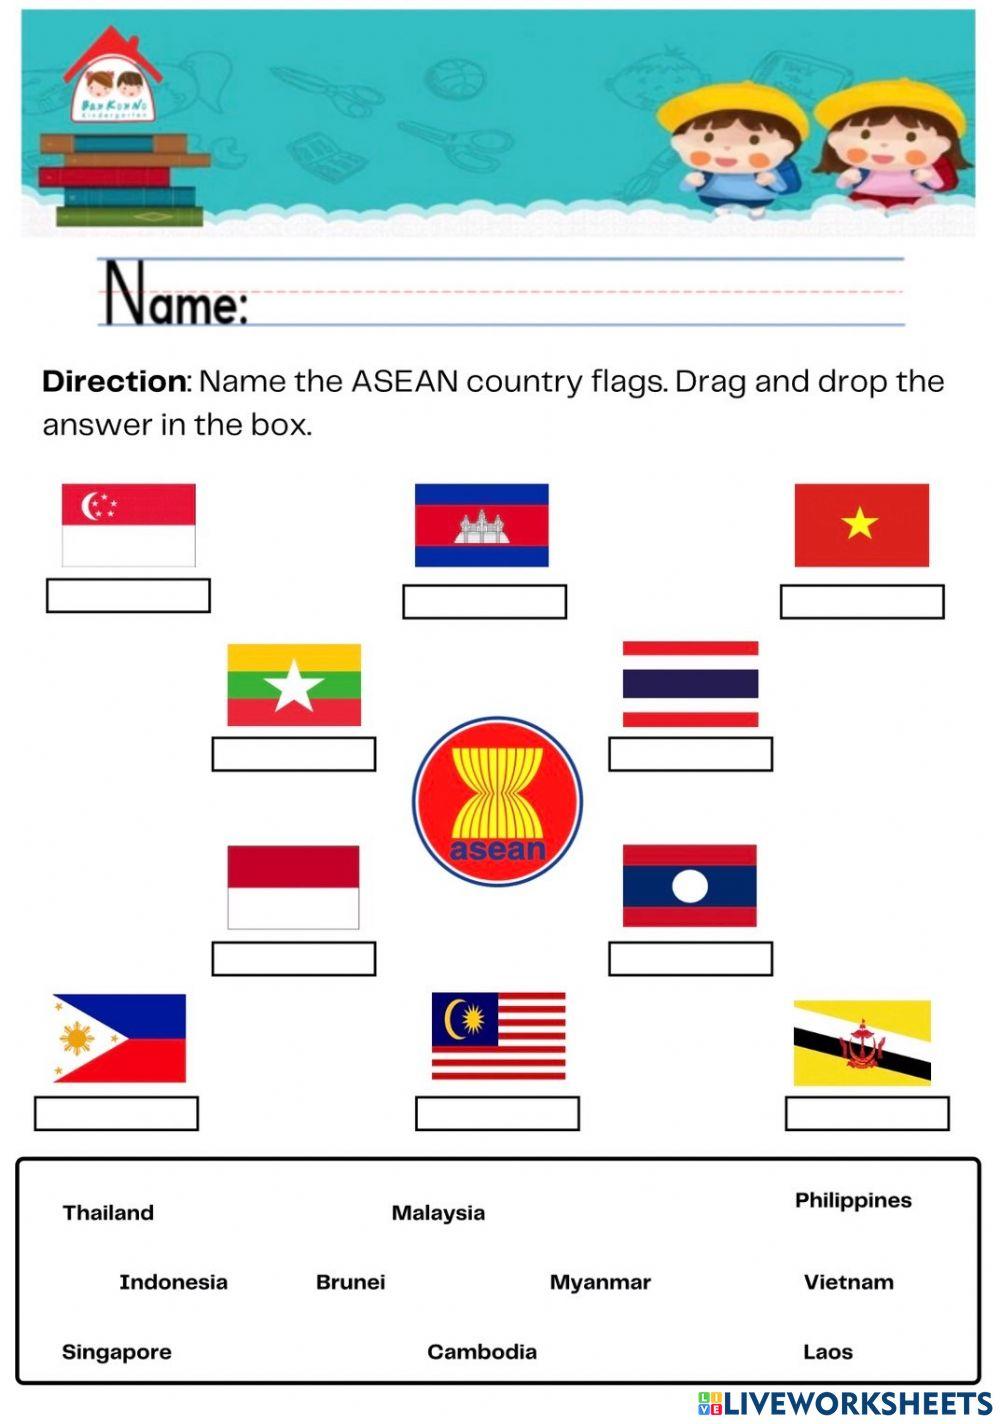 Asean flags